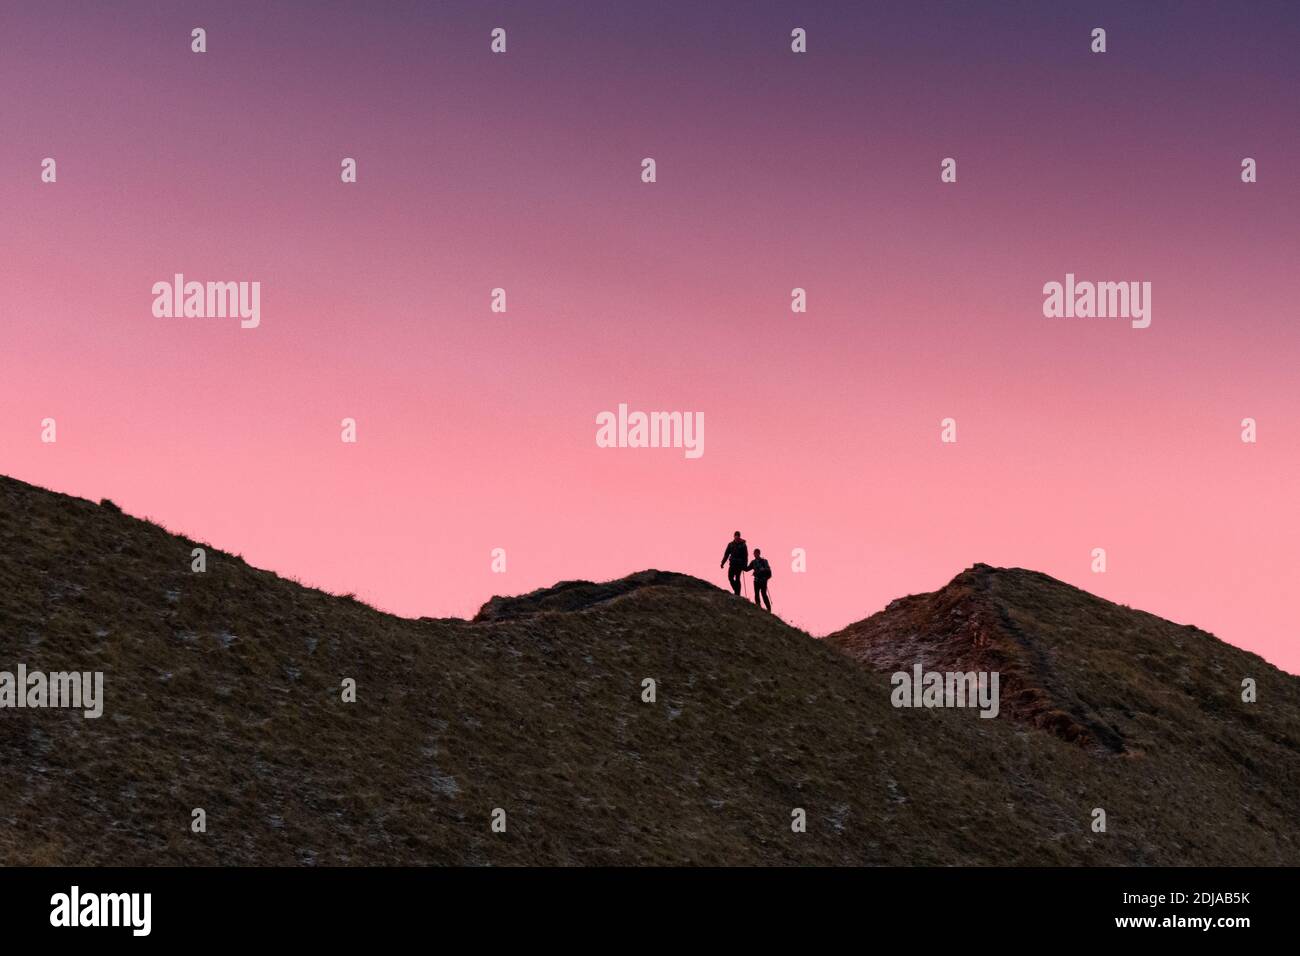 silhouette di escursionisti su una cresta svizzera durante un colorato alba Foto Stock